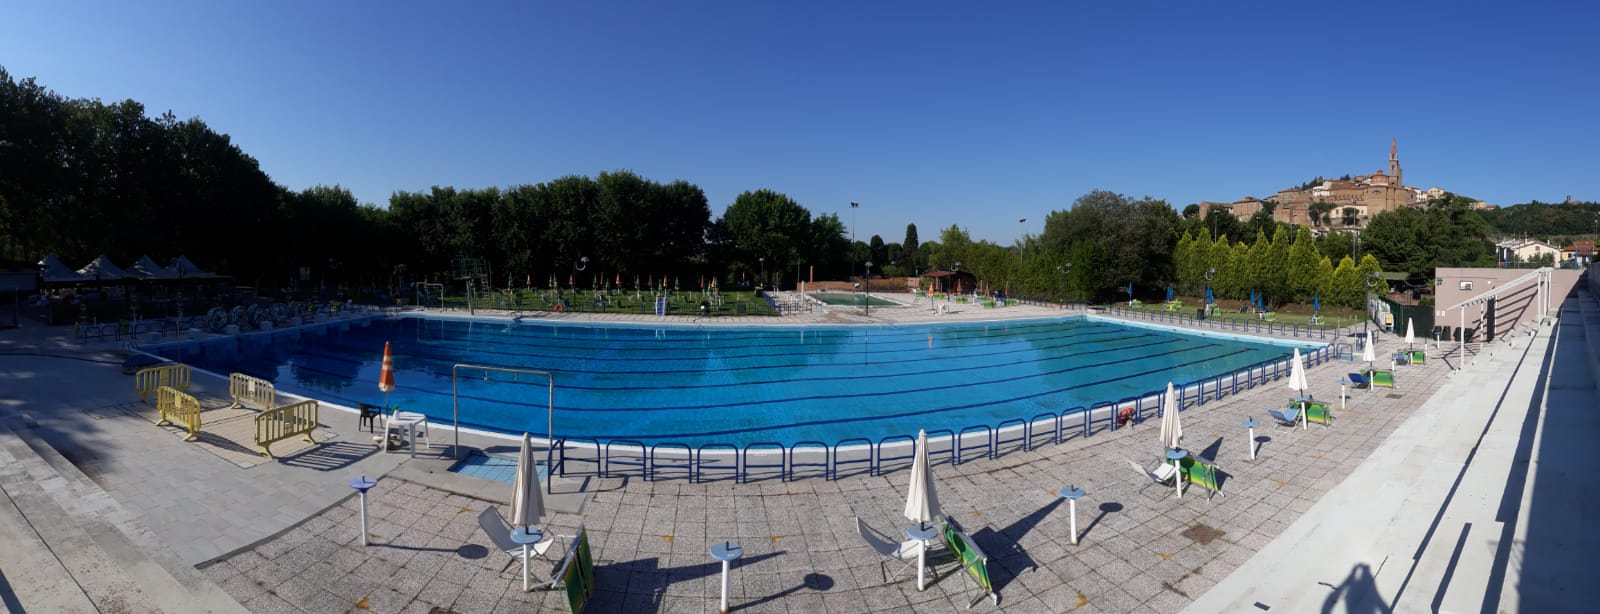 Castiglion Fiorentino, riprende l’attività della piscina comunale